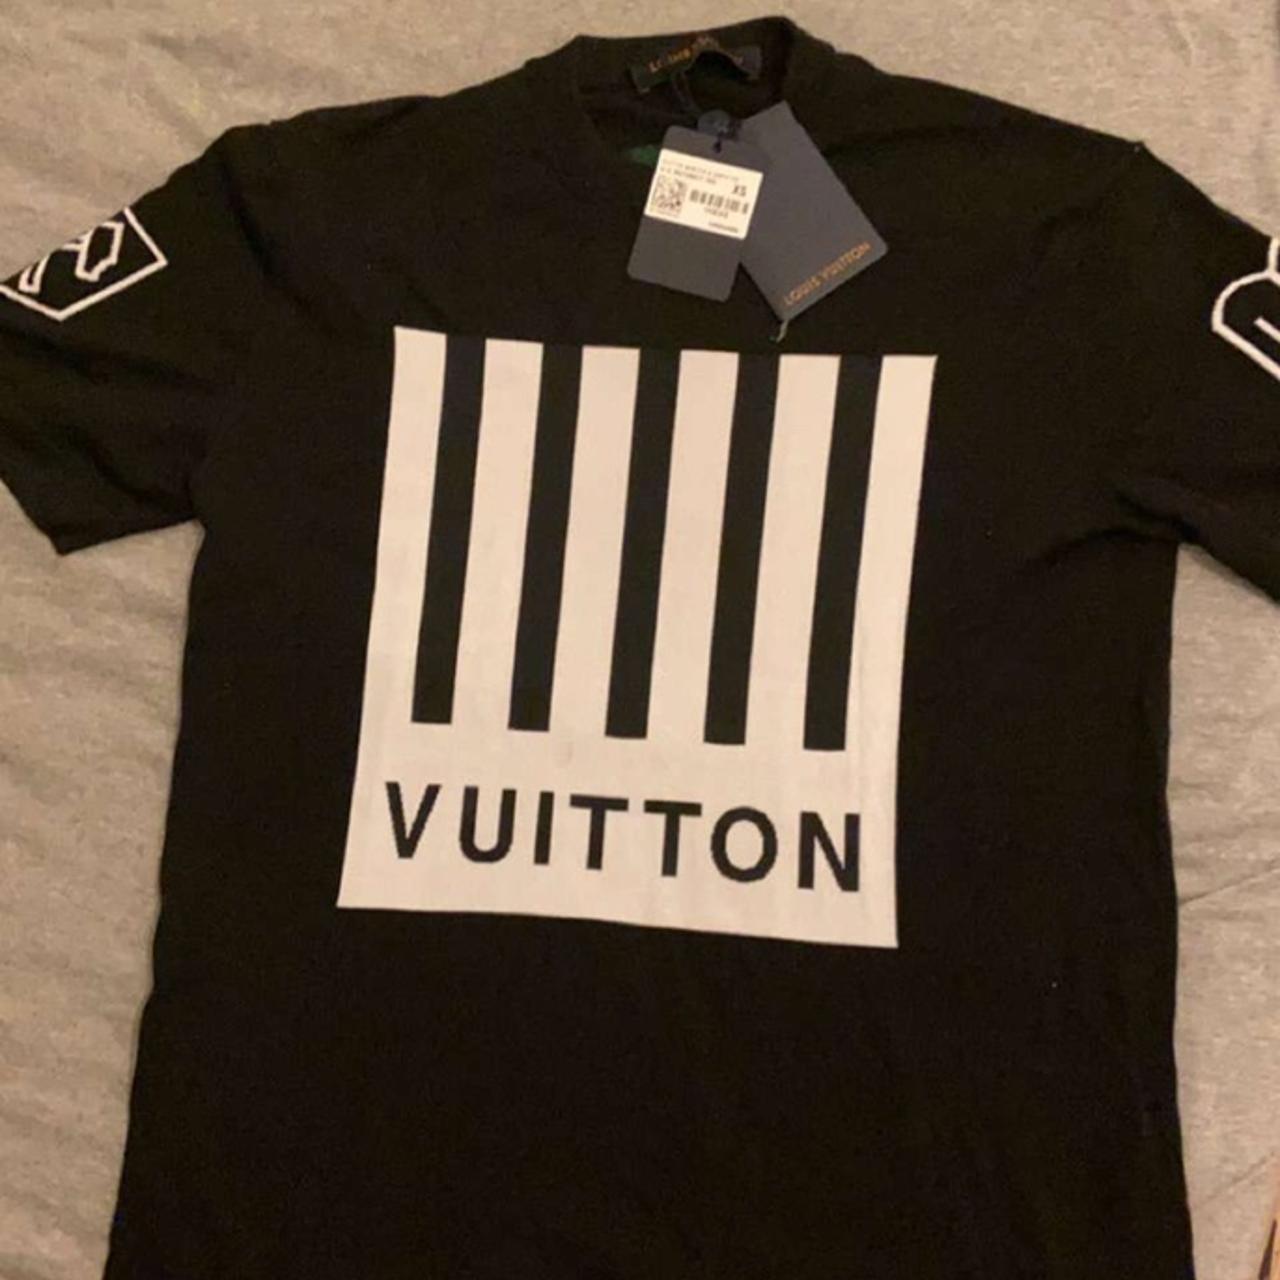 New women's Louis Vuitton black t-shirt with - Depop